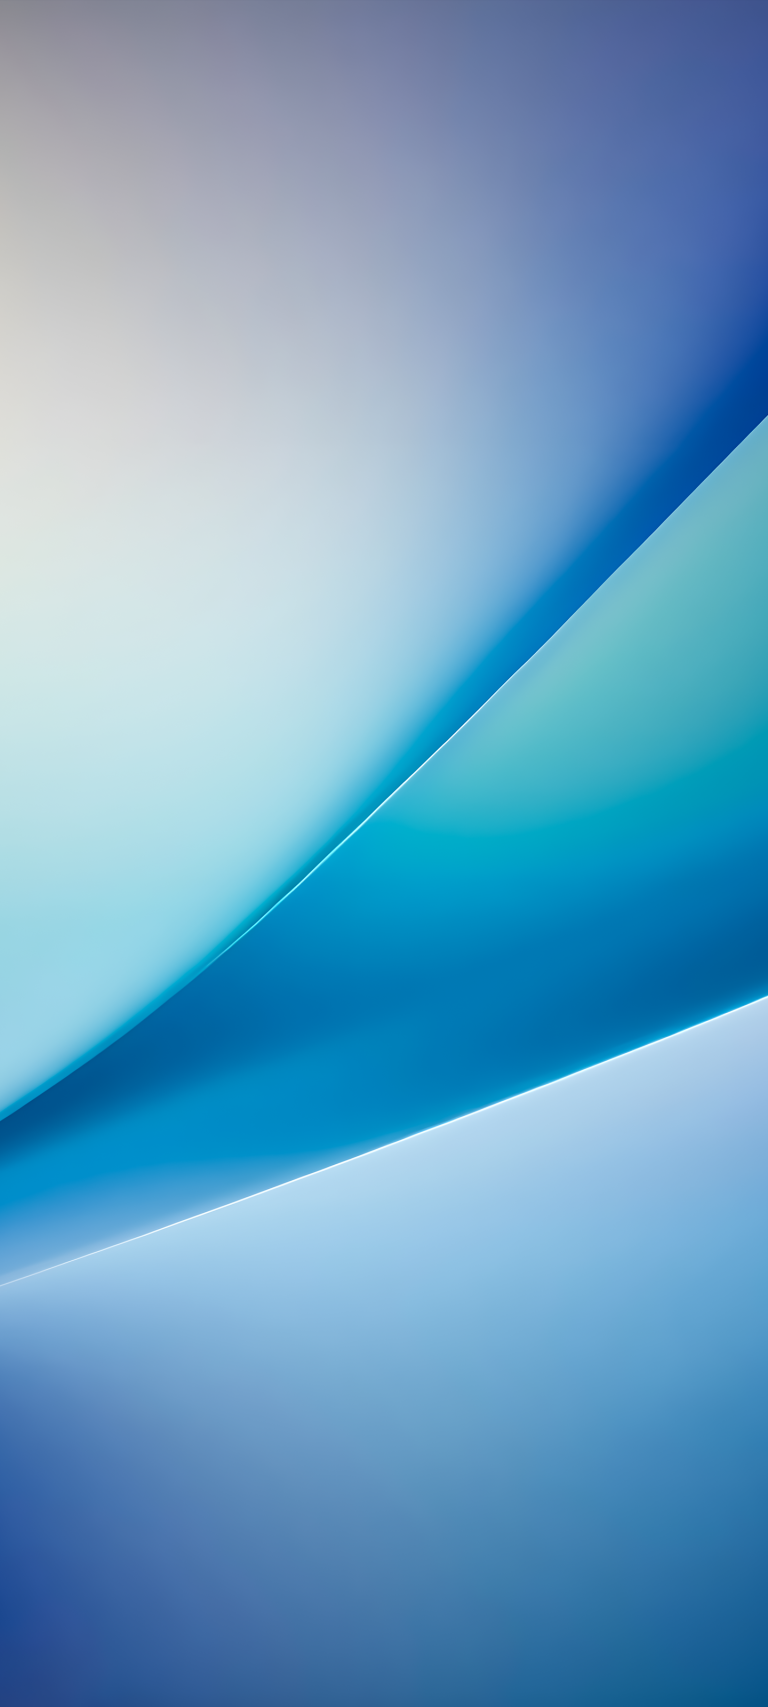 iPhone – Blue gradient streak by Hk3ToN | Zollotech